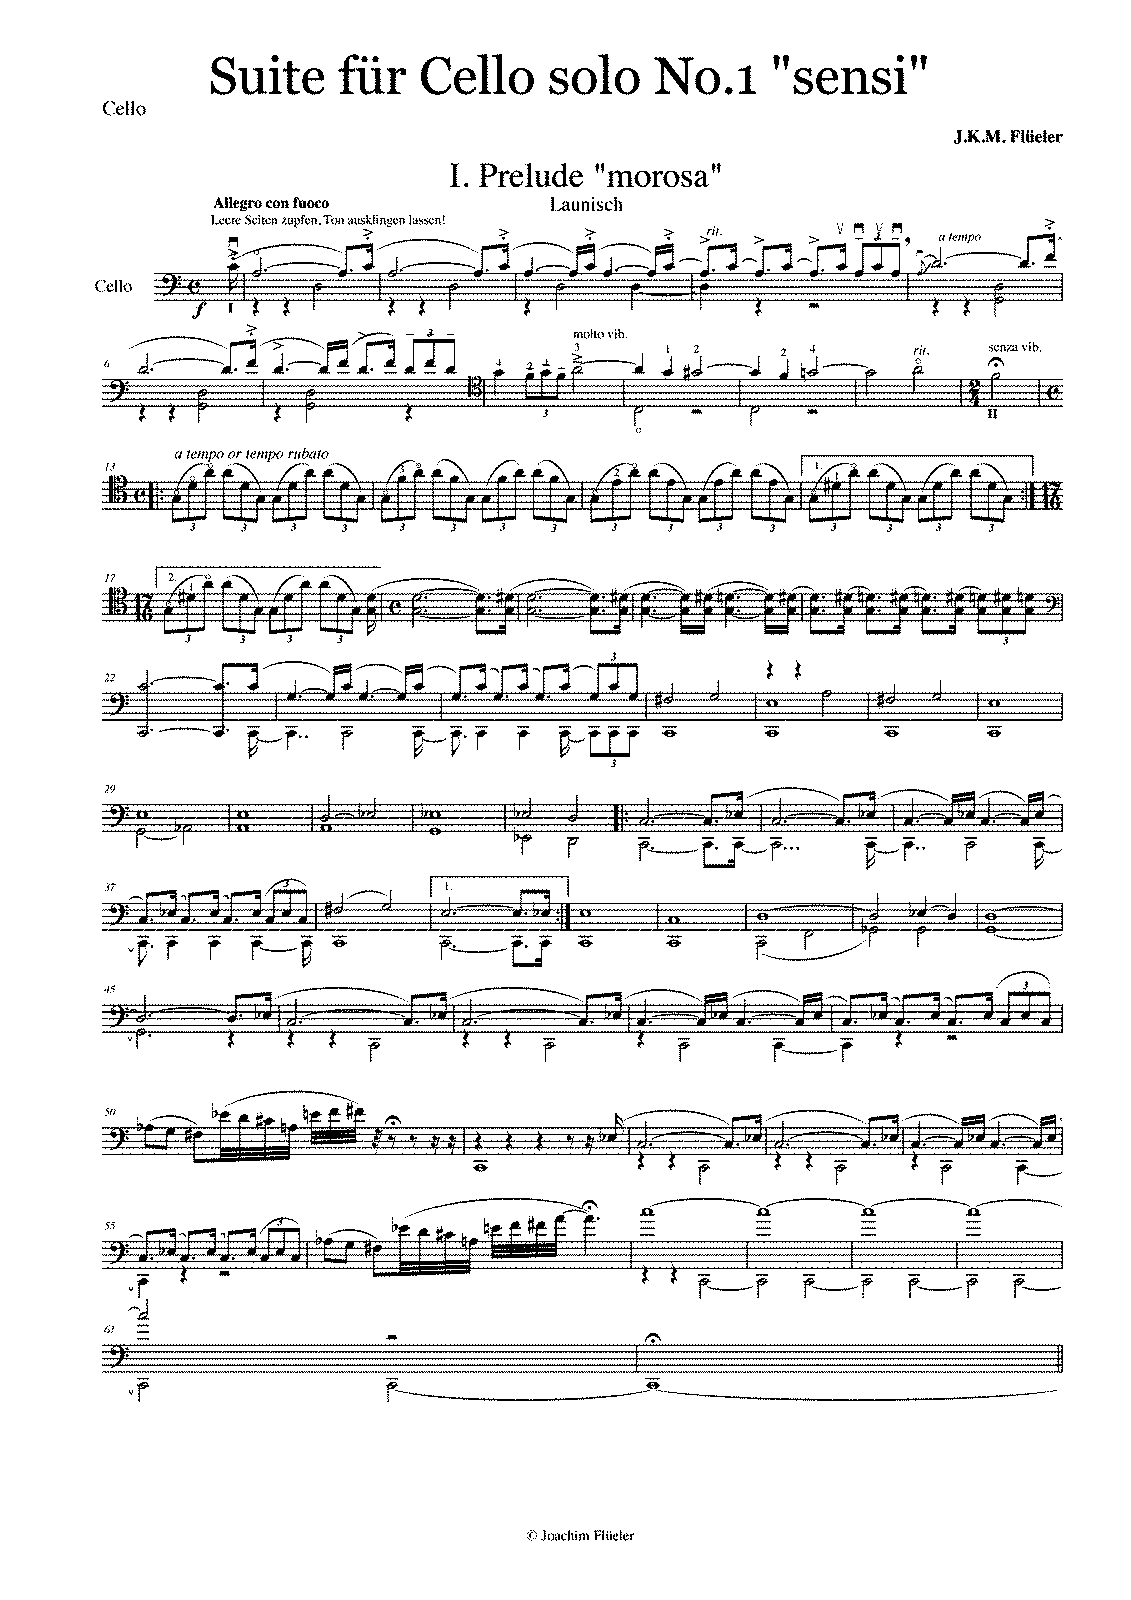 Suite No.1 for Solo Cello, Op.4 (Flüeler, Joachim Karl Melchior) - IMSLP